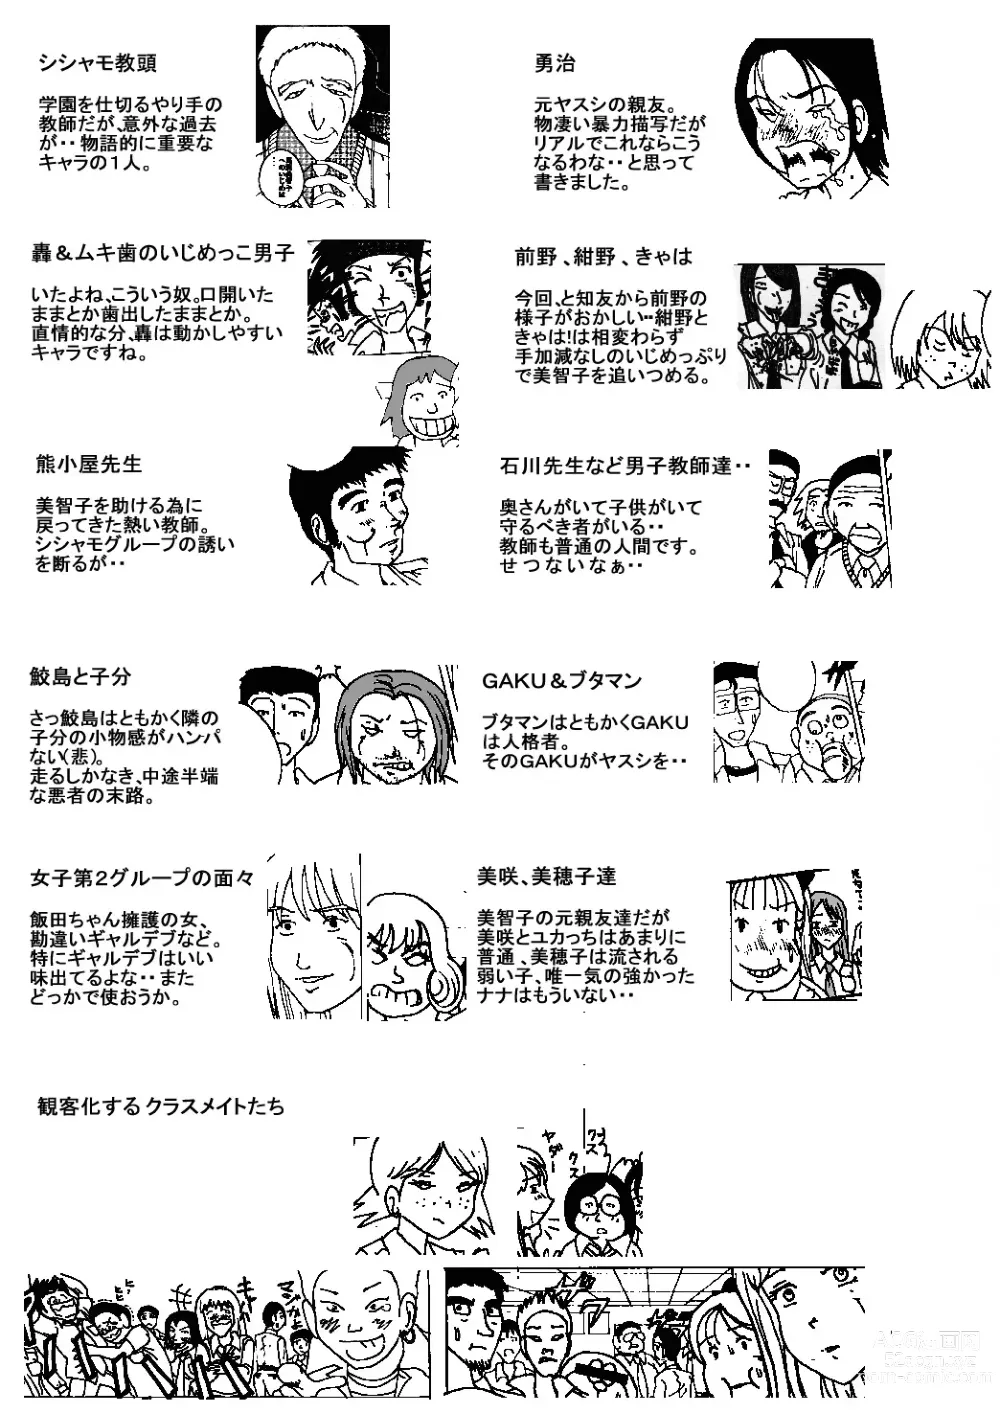 Page 59 of doujinshi Mune Ippai no Dizzy Ch. 8